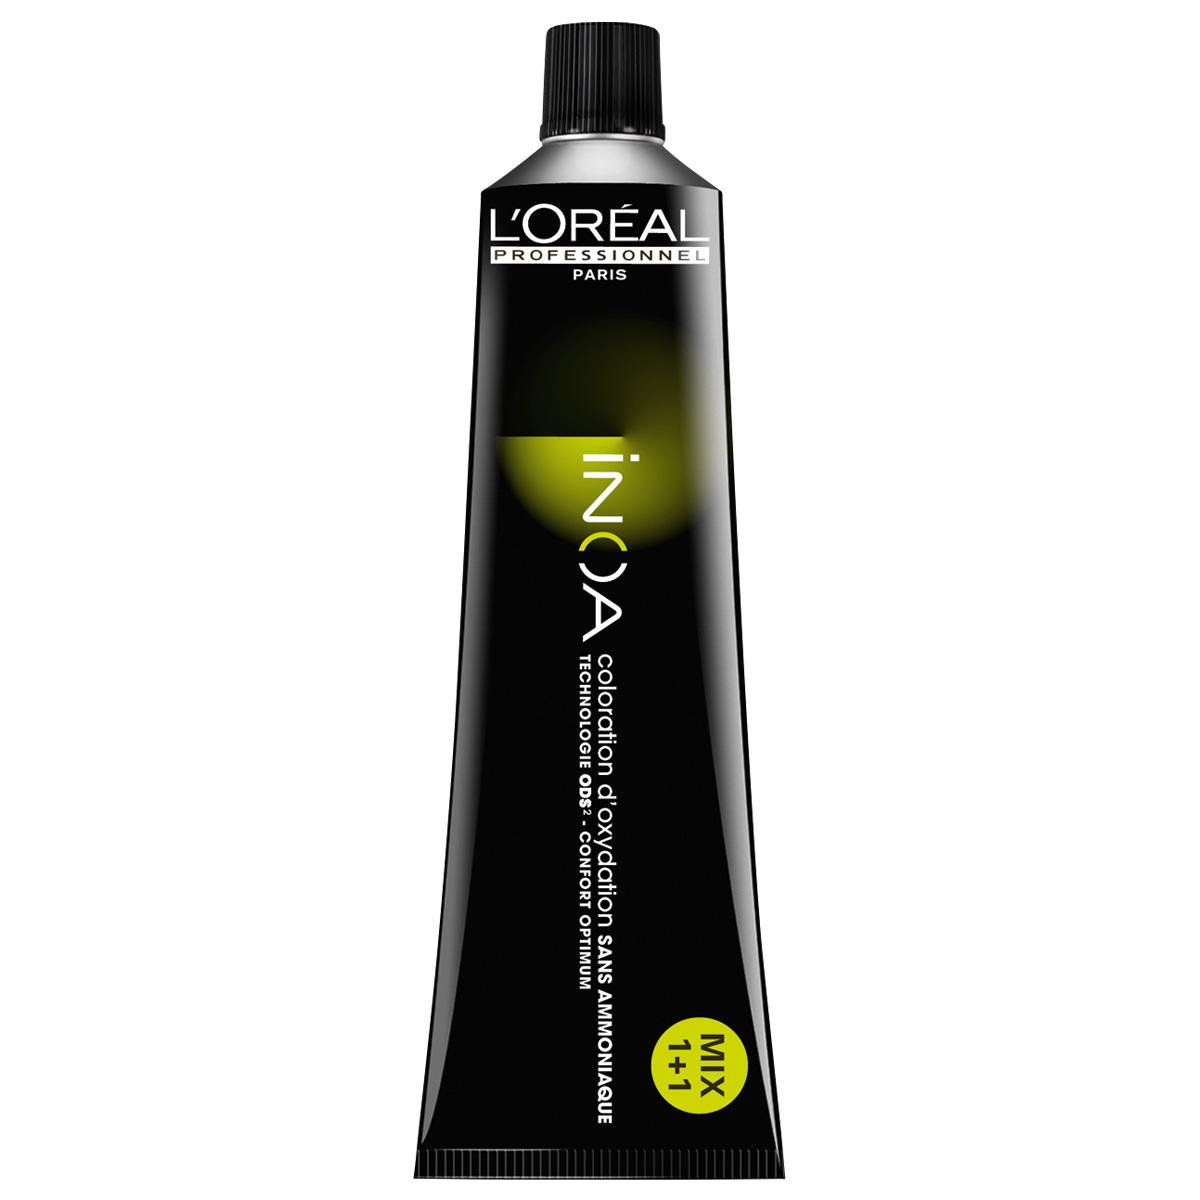 L'Oréal Professionnel Paris Coloration 6.0 Rubio oscuro intensivo, tubo 60 ml - 1